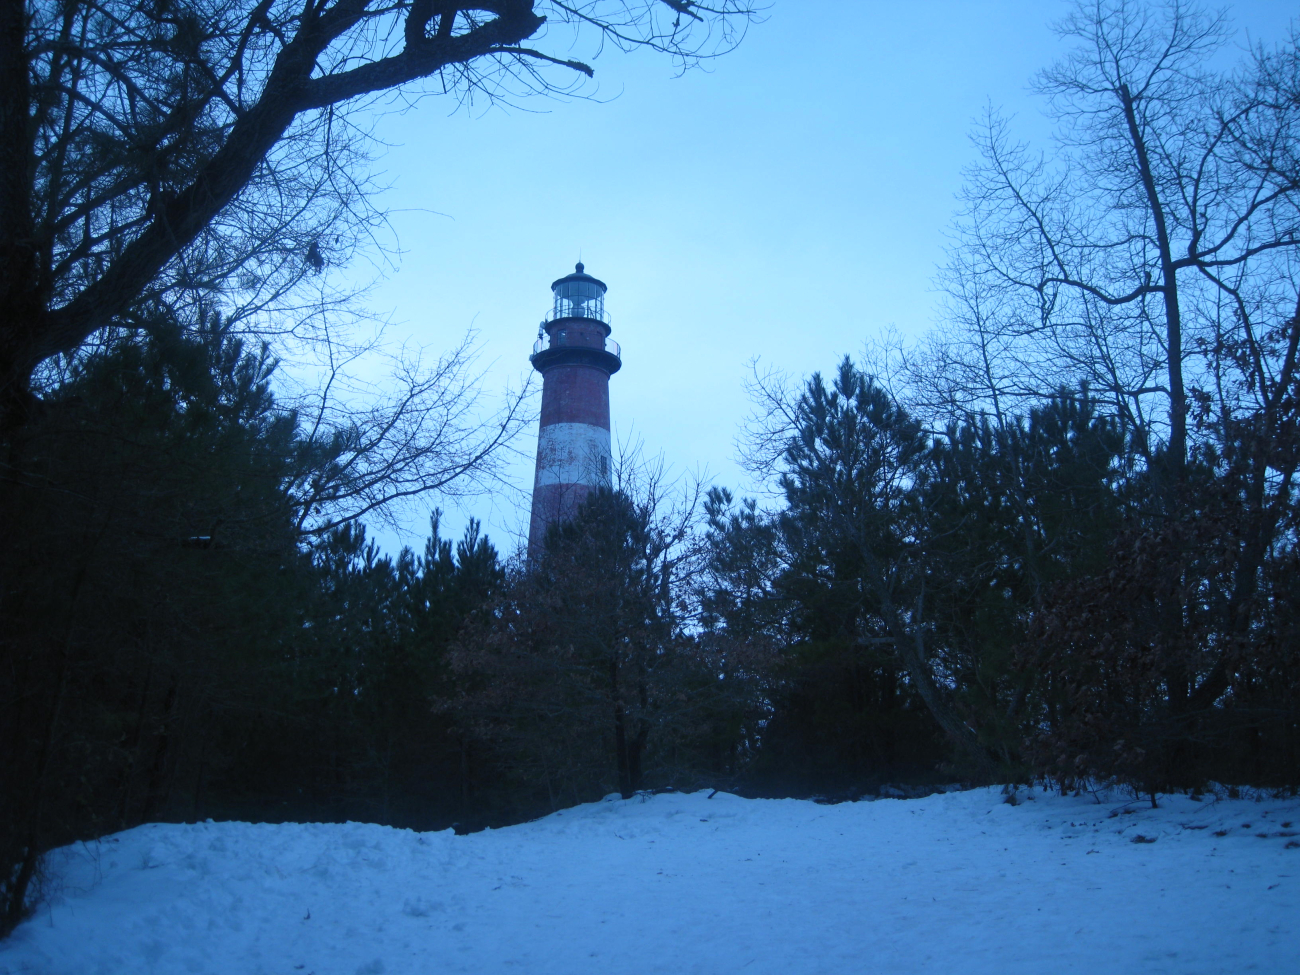 Assateague lighthouse after a snow